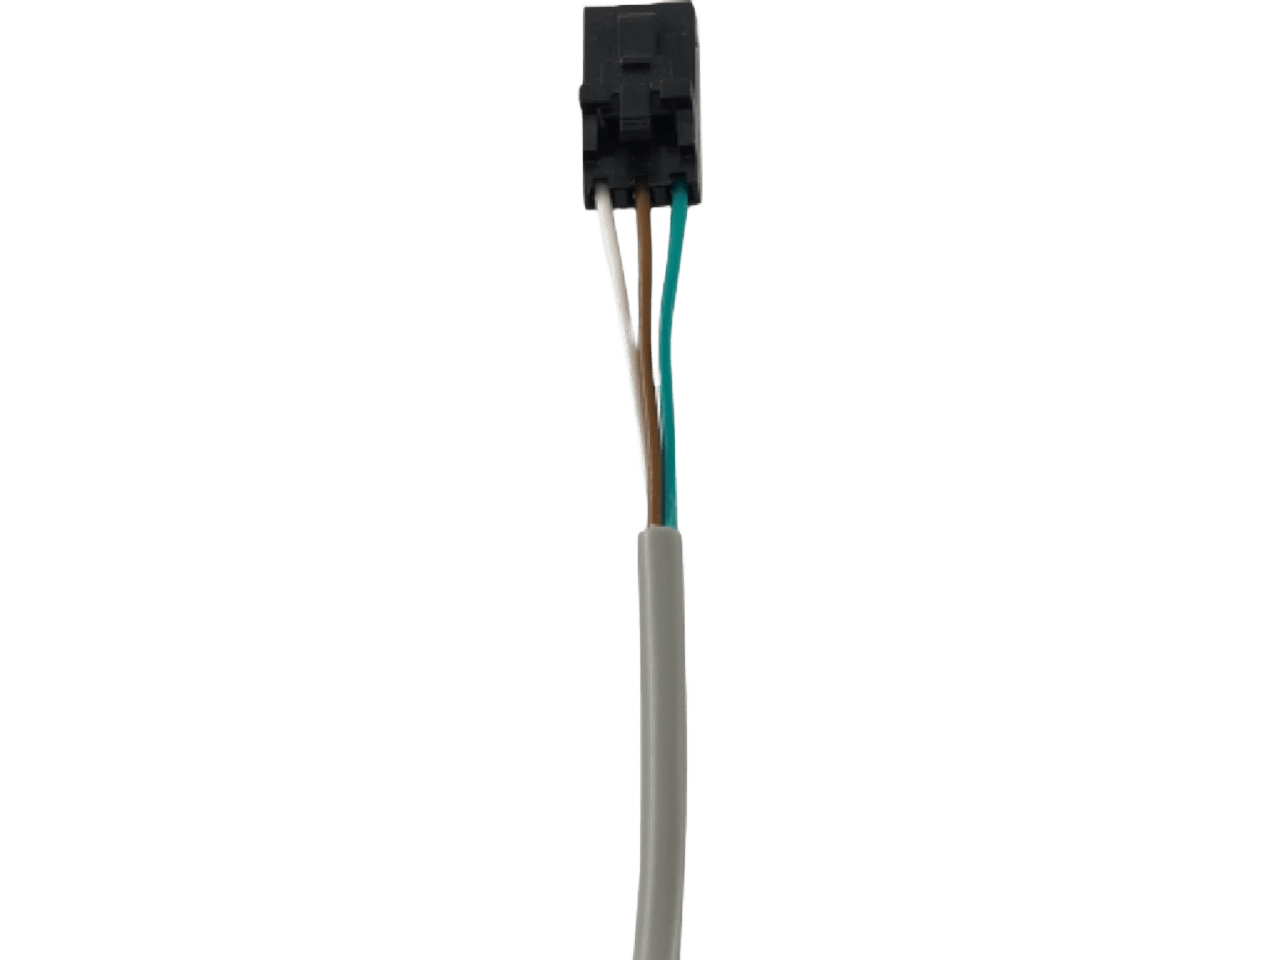 FRABA VITECTOR OSE-S 6600 Sensoren optische Schaltleiste Sender Tx 0,5m/Empfänger Rx 0,5m PVC-Kabel GfA-Stecker